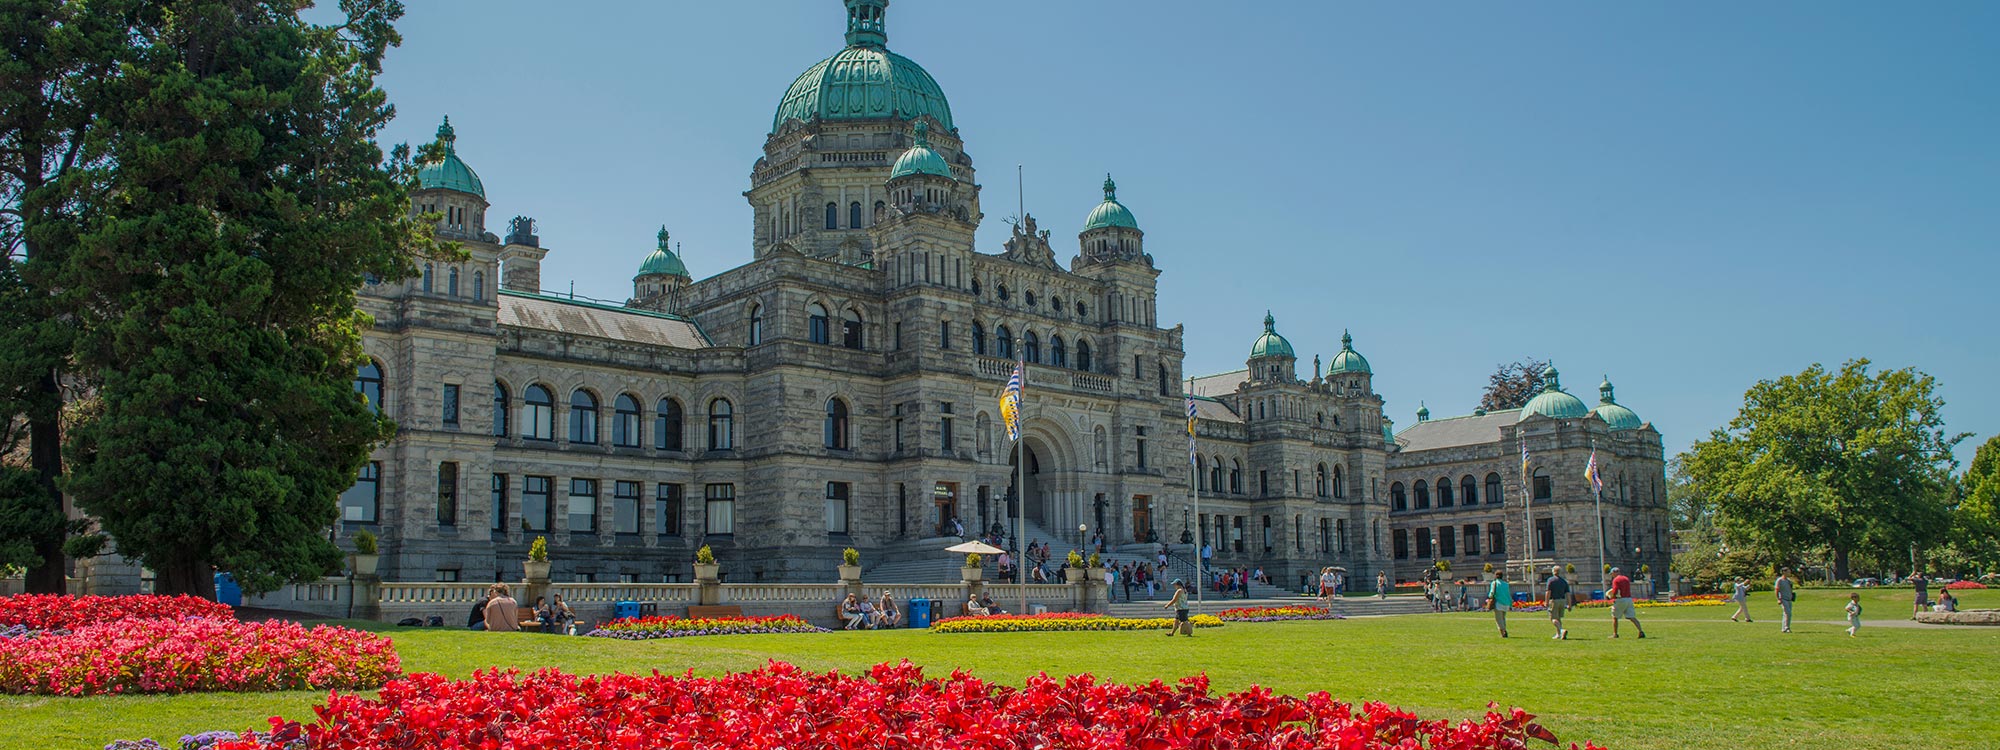 Parliament building in Victoria, British Columbia.